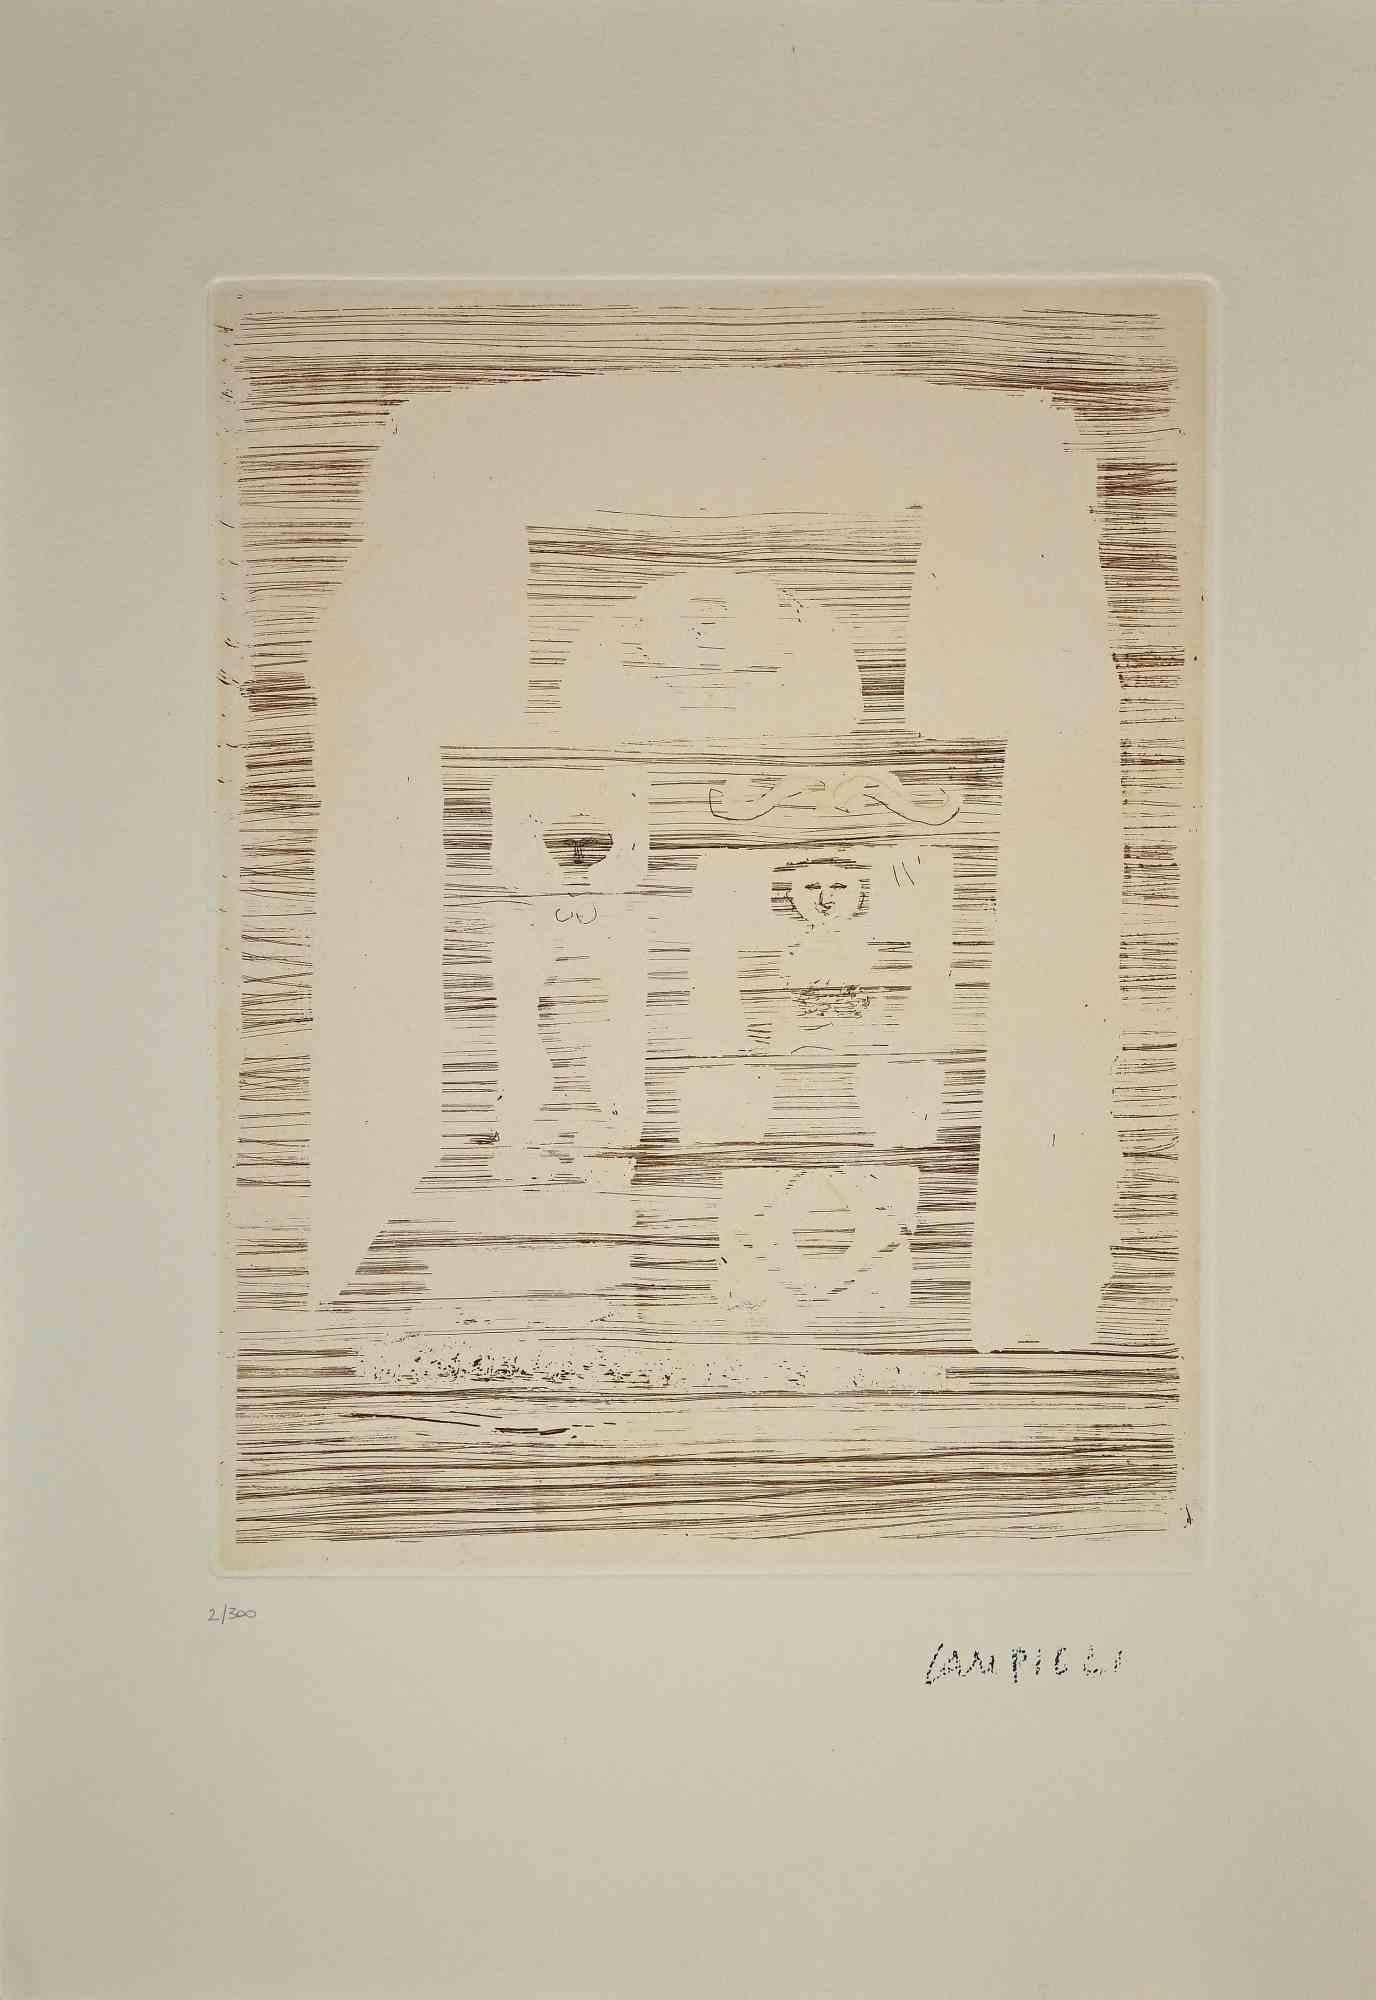 Das Frauenhaus ist ein Druck von Massimo Campigli aus den 1970/1971er Jahren.

Radierung auf Papier.

Dieses Kunstwerk gehört zu einer Reihe von Werken, die in der letzten Schaffensperiode des Künstlers entstanden sind und zur Jahreswende seines